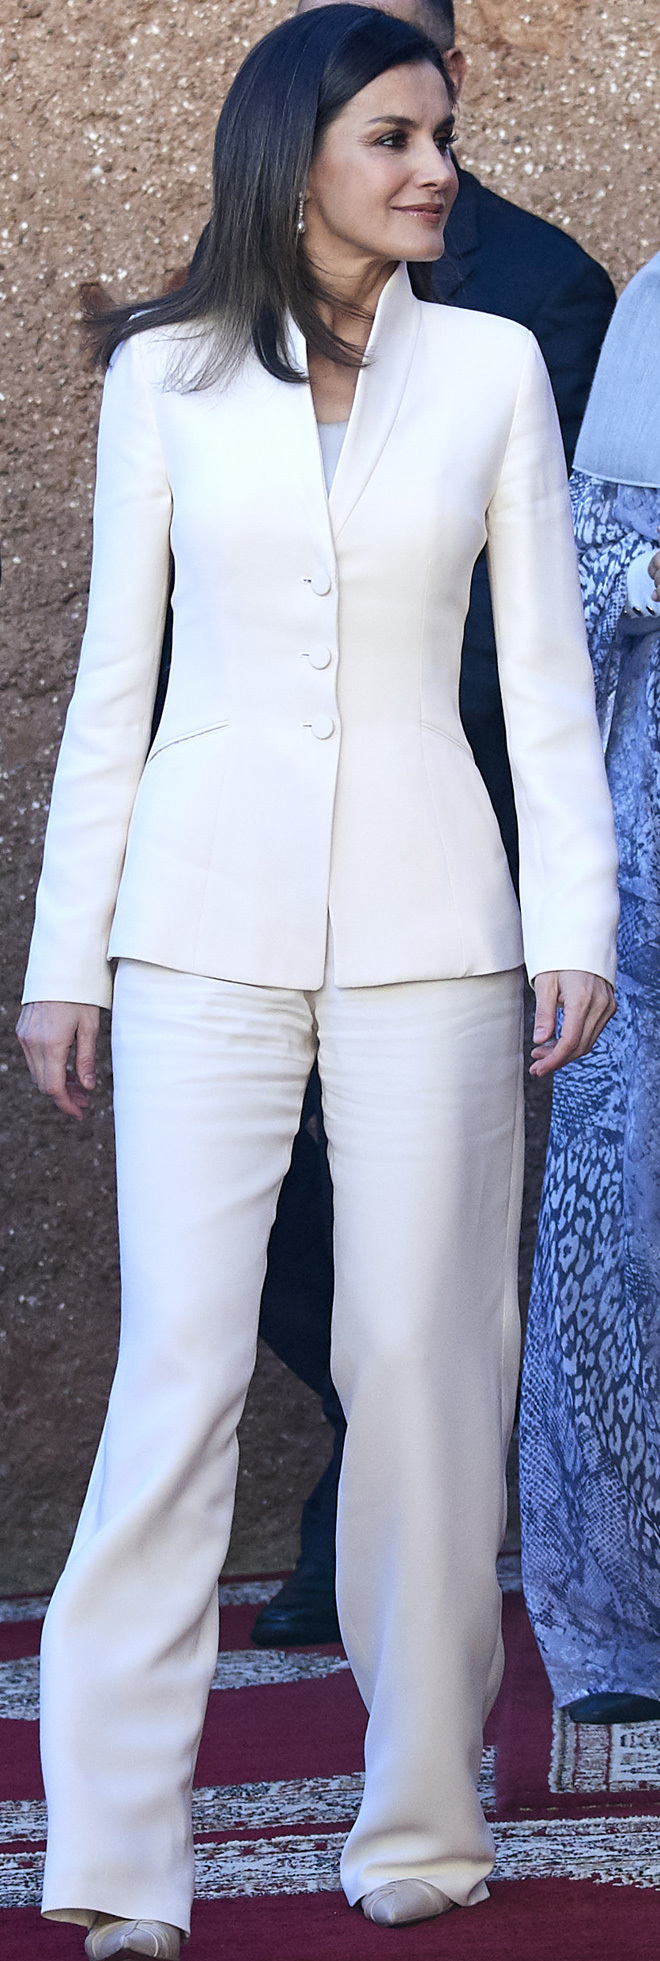 Letizia  con traje de chaqueta y pantaln blanco de Armani en...